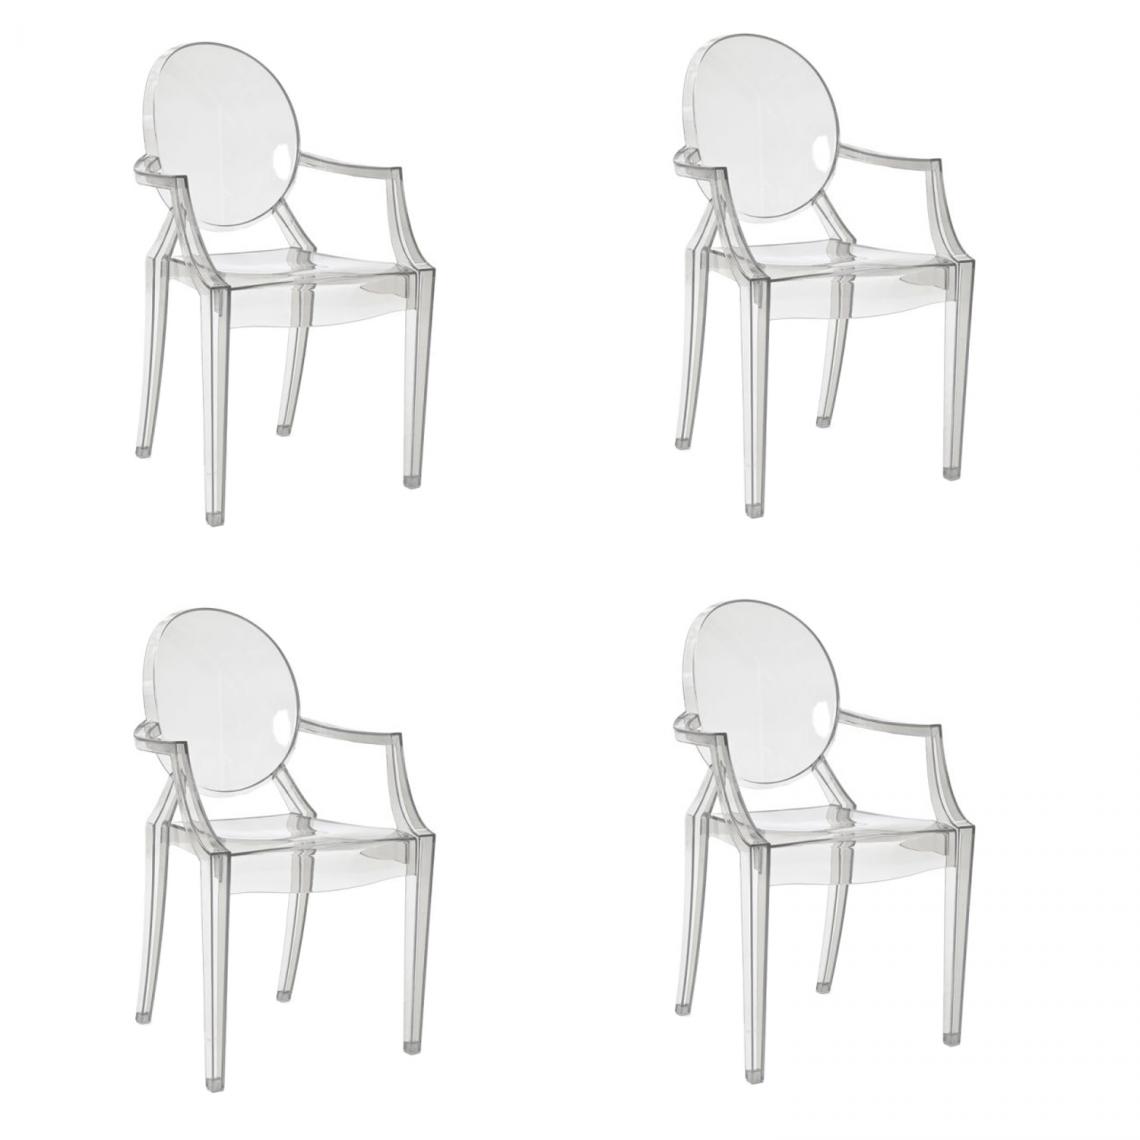 Hucoco - LUIZ - Lot de 4 chaises transparents pour salon - 92x54x42 cm - En polycarbonate - Style moderne - Transparent - Chaises